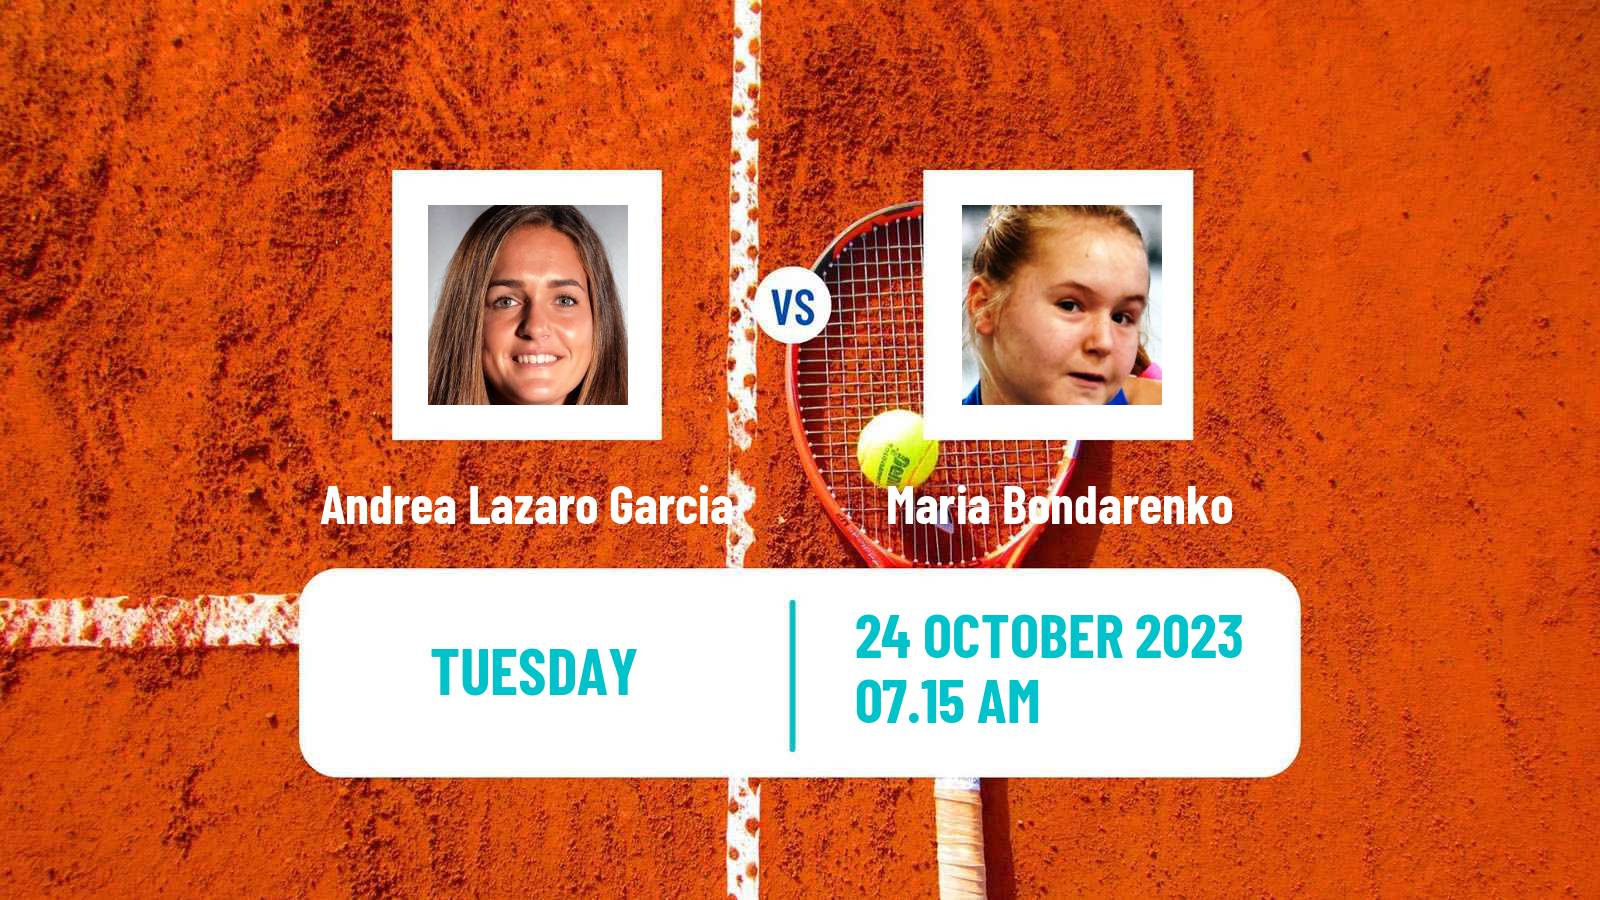 Tennis ITF W100 Les Franqueses Del Valles Women Andrea Lazaro Garcia - Maria Bondarenko